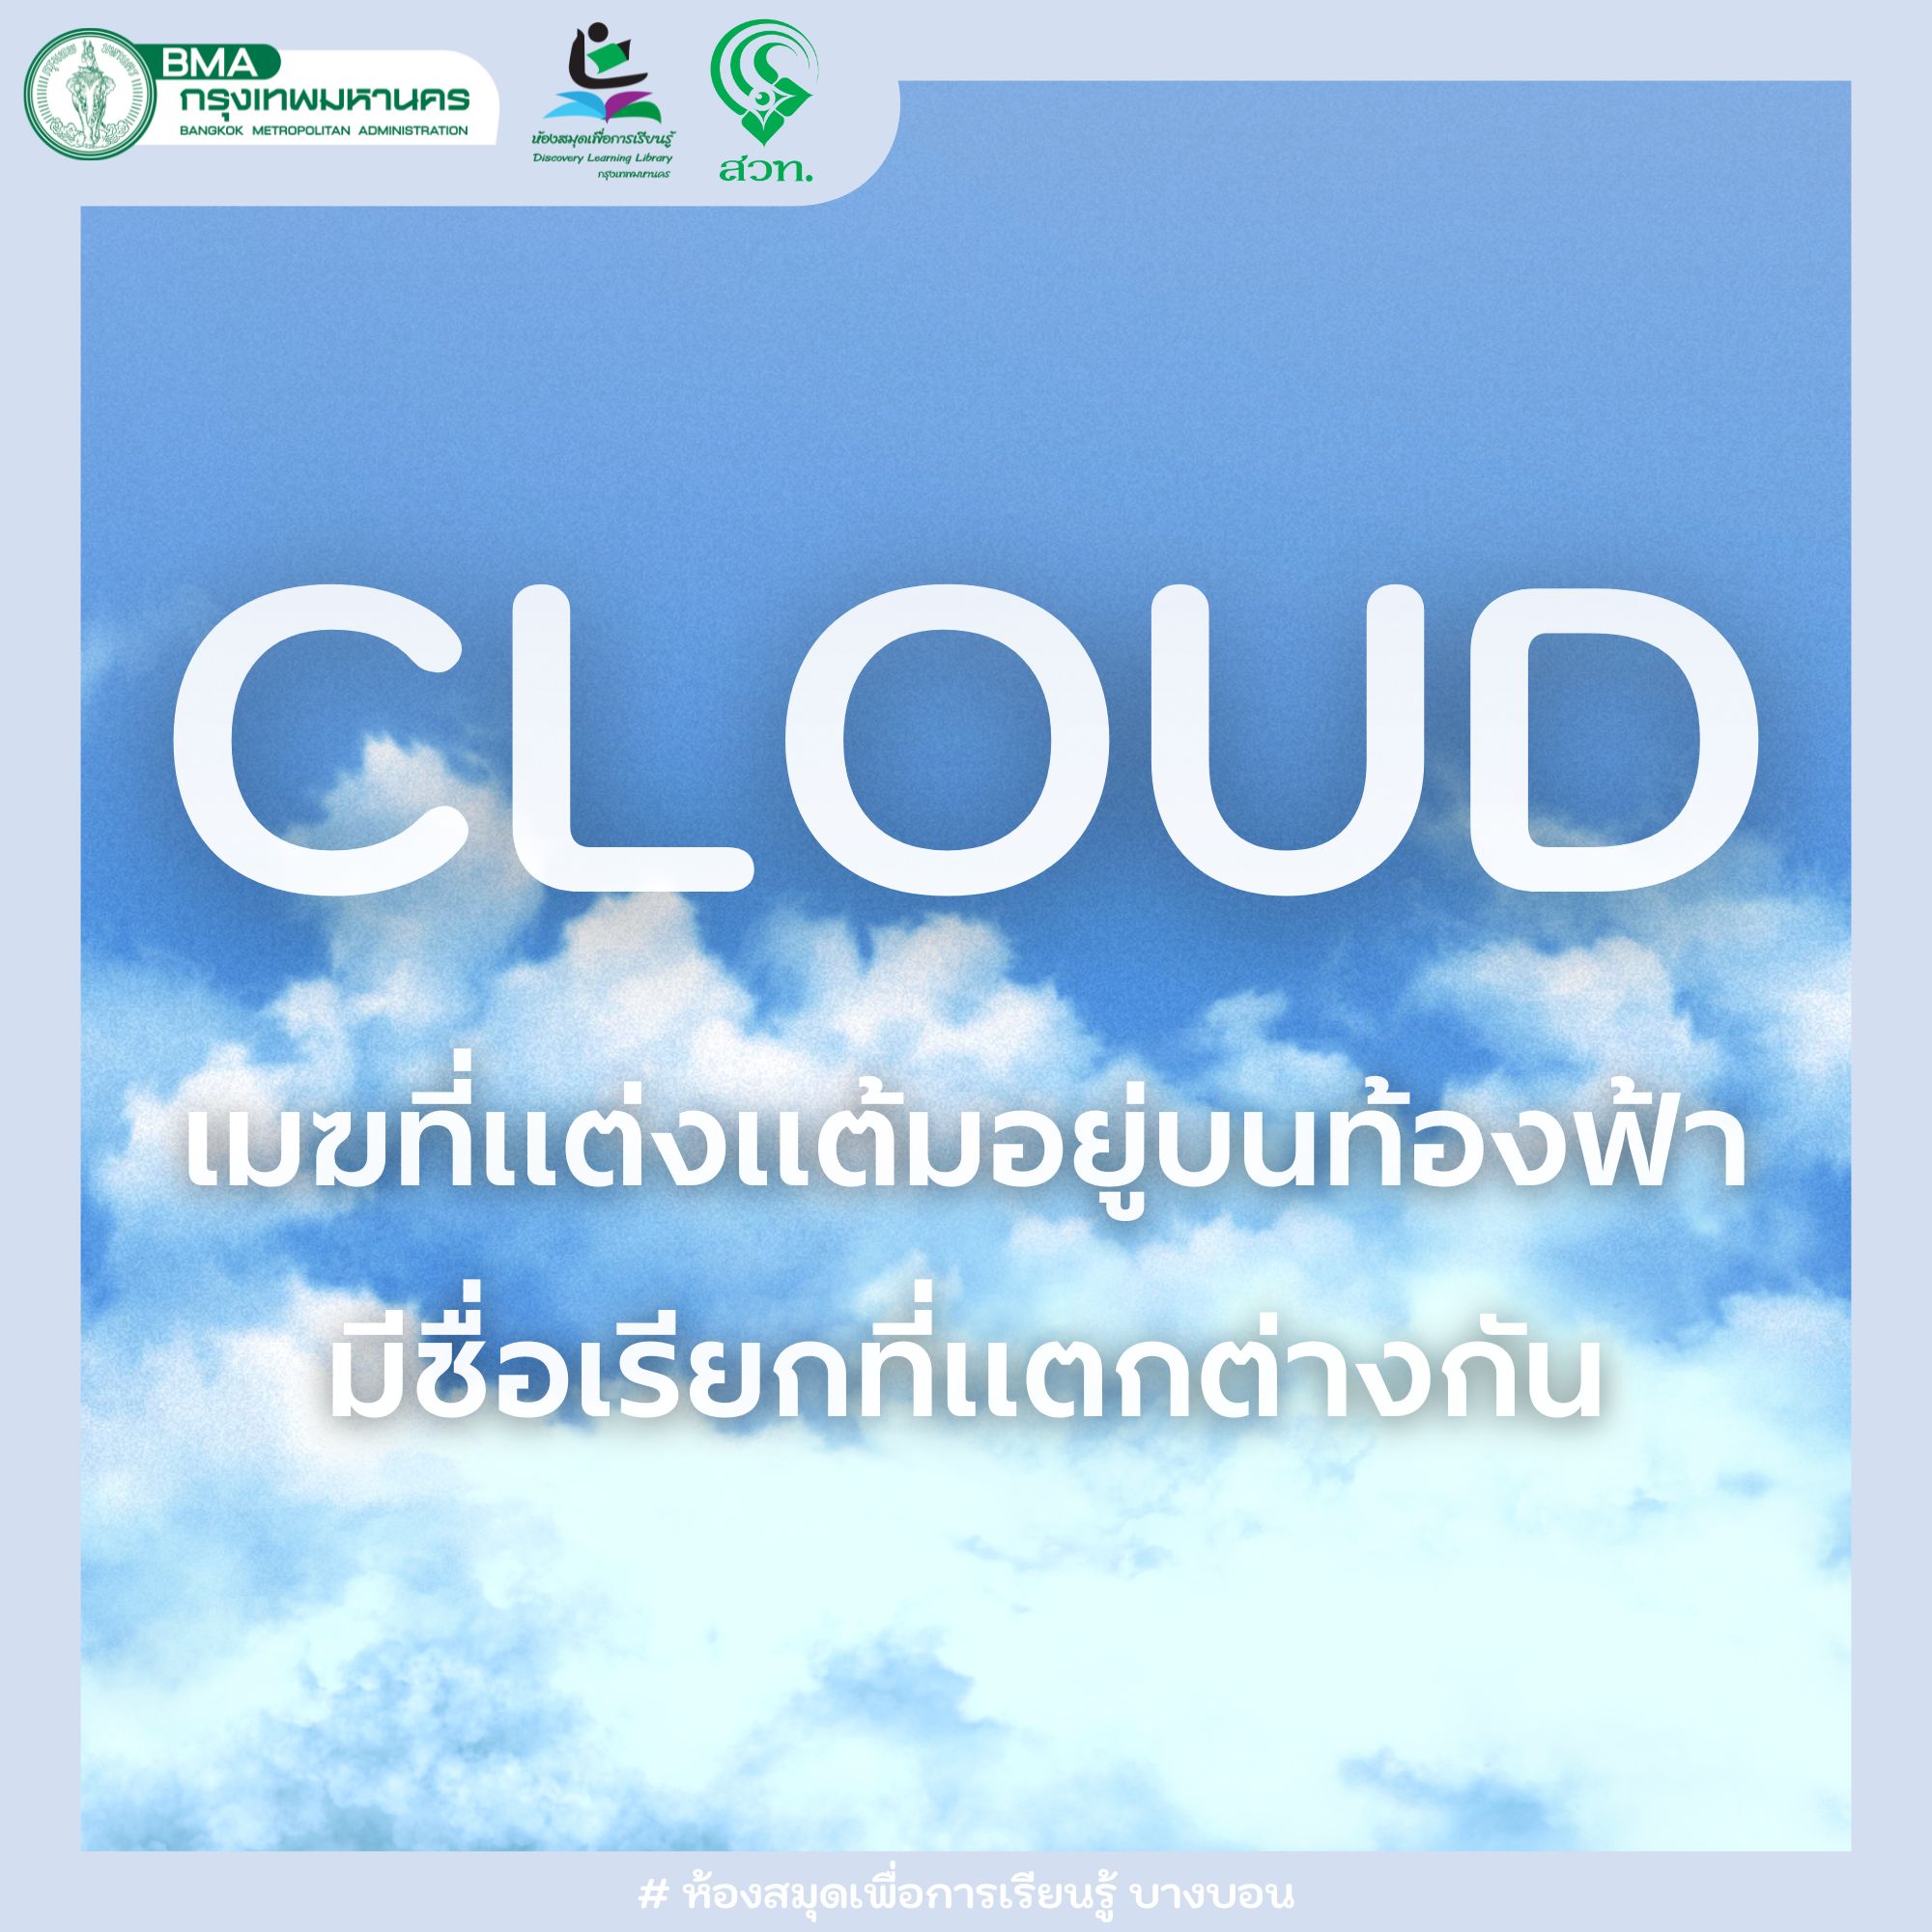 เมฆที่แต่งแต้มอยู่บนท้องฟ้ามีชื่อเรียกที่แตกต่างกัน